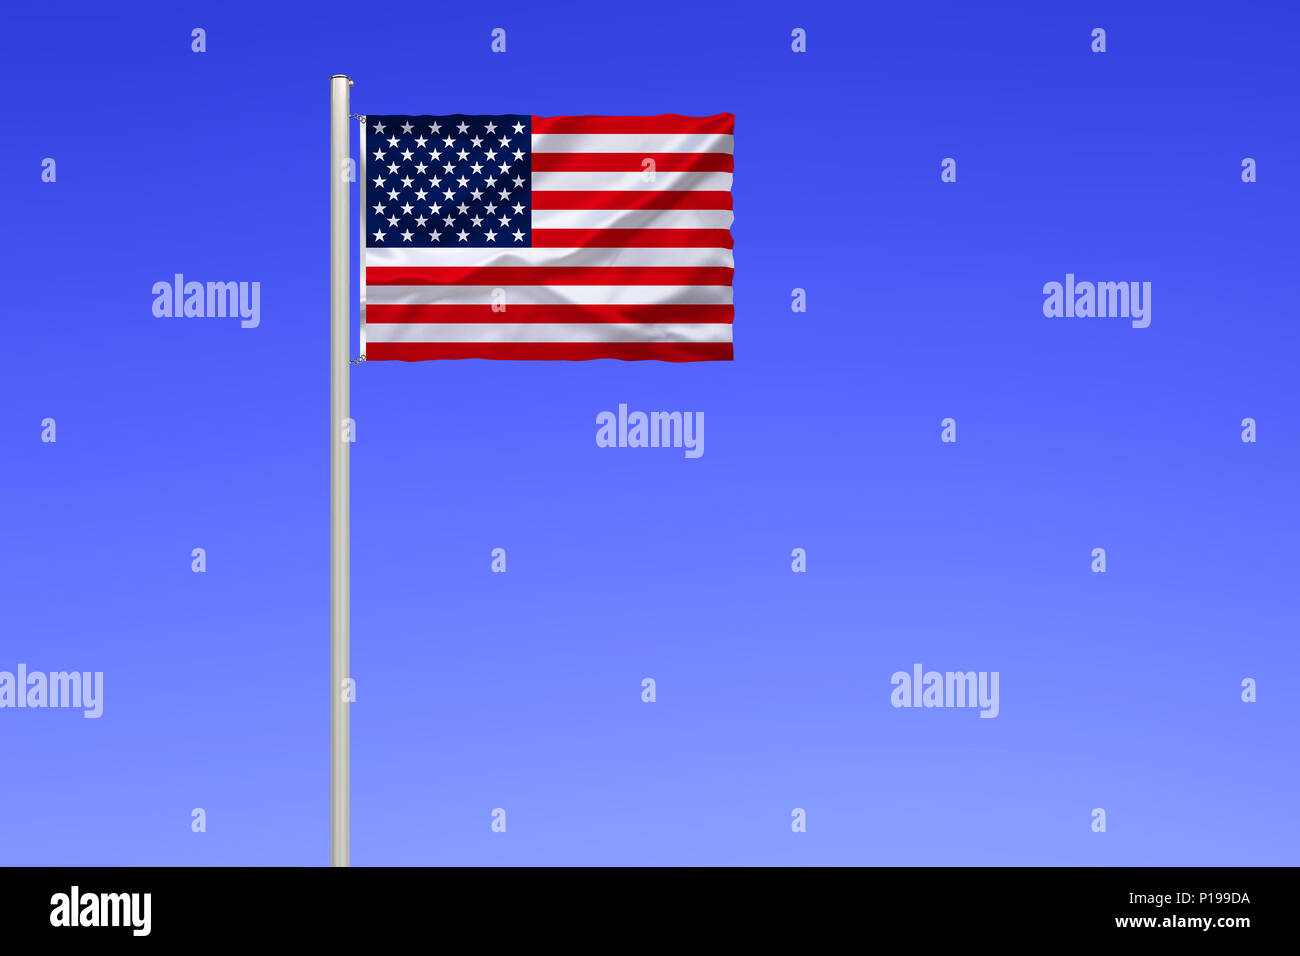 Bandera de los Estados Unidos de América, Estados Unidos, Flagge von Vereinigte Staaten von Amerika, EE.UU. Foto de stock